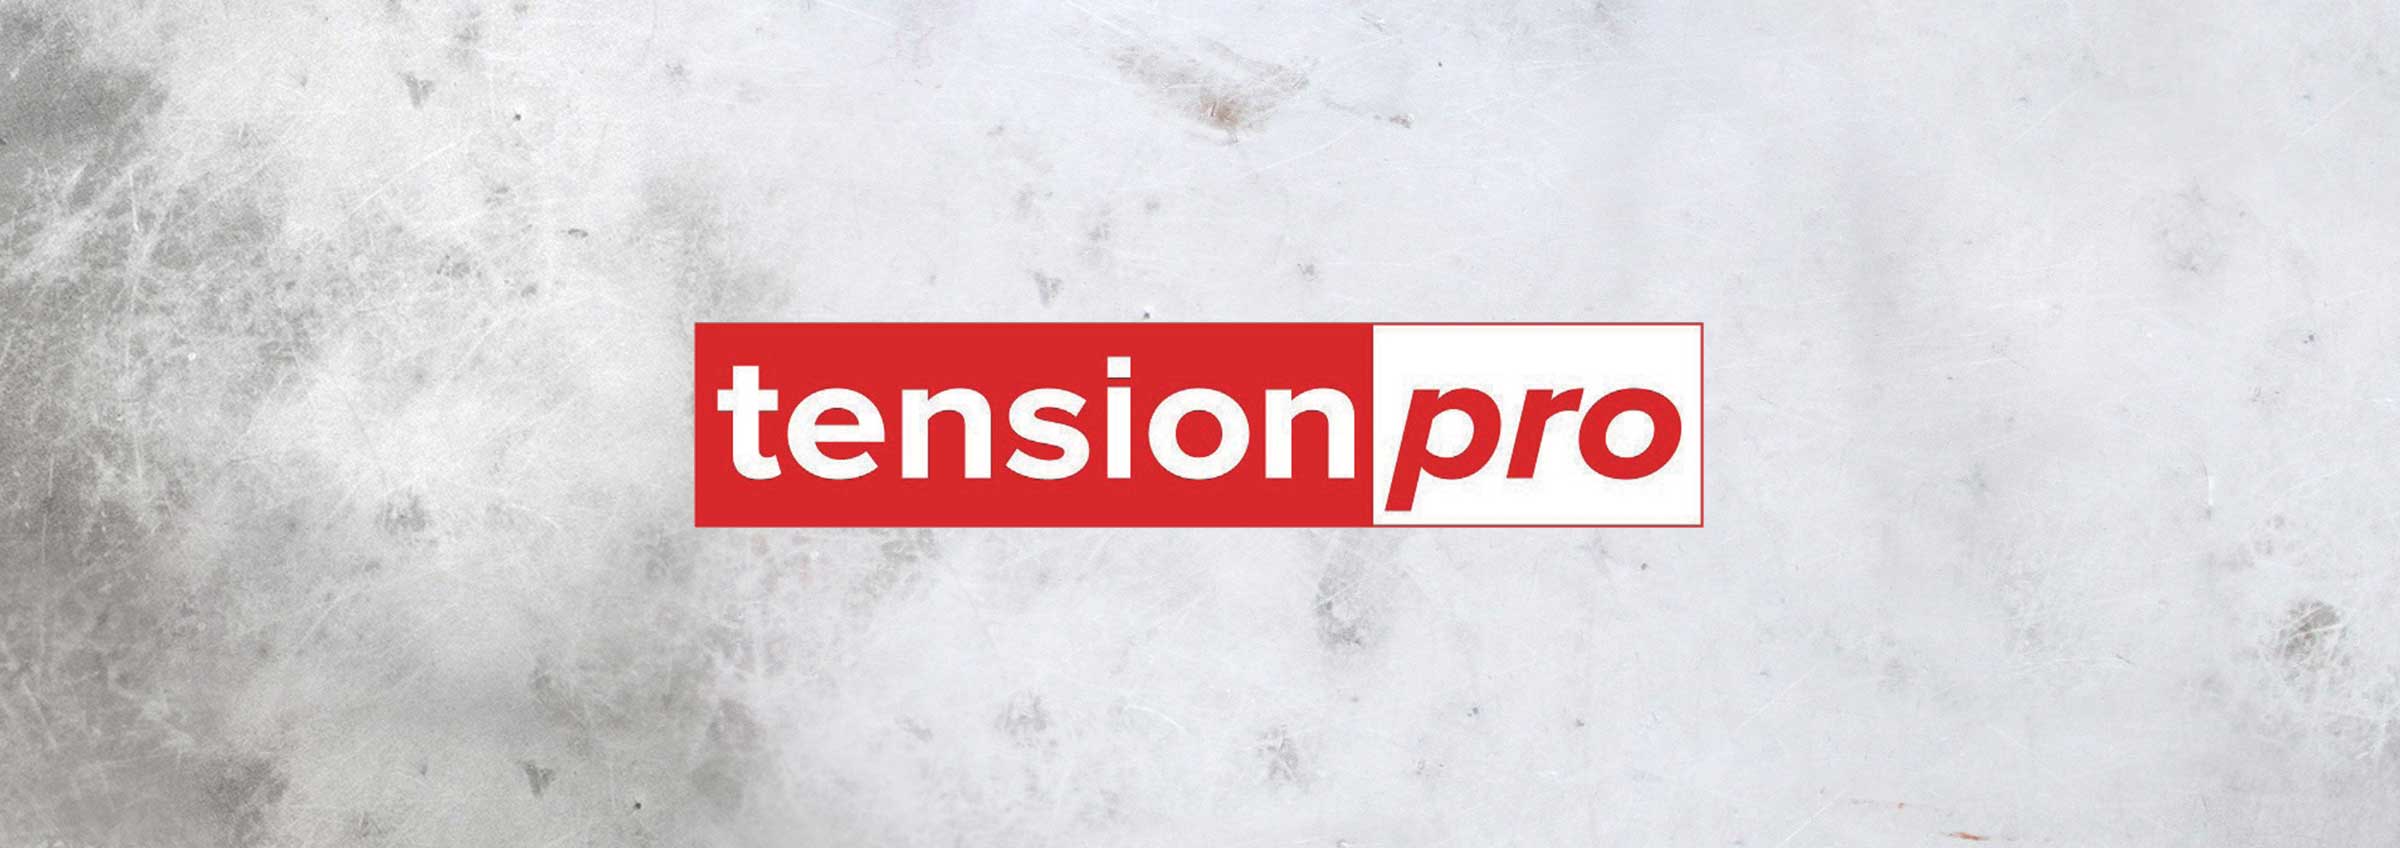 TensionPro logo header